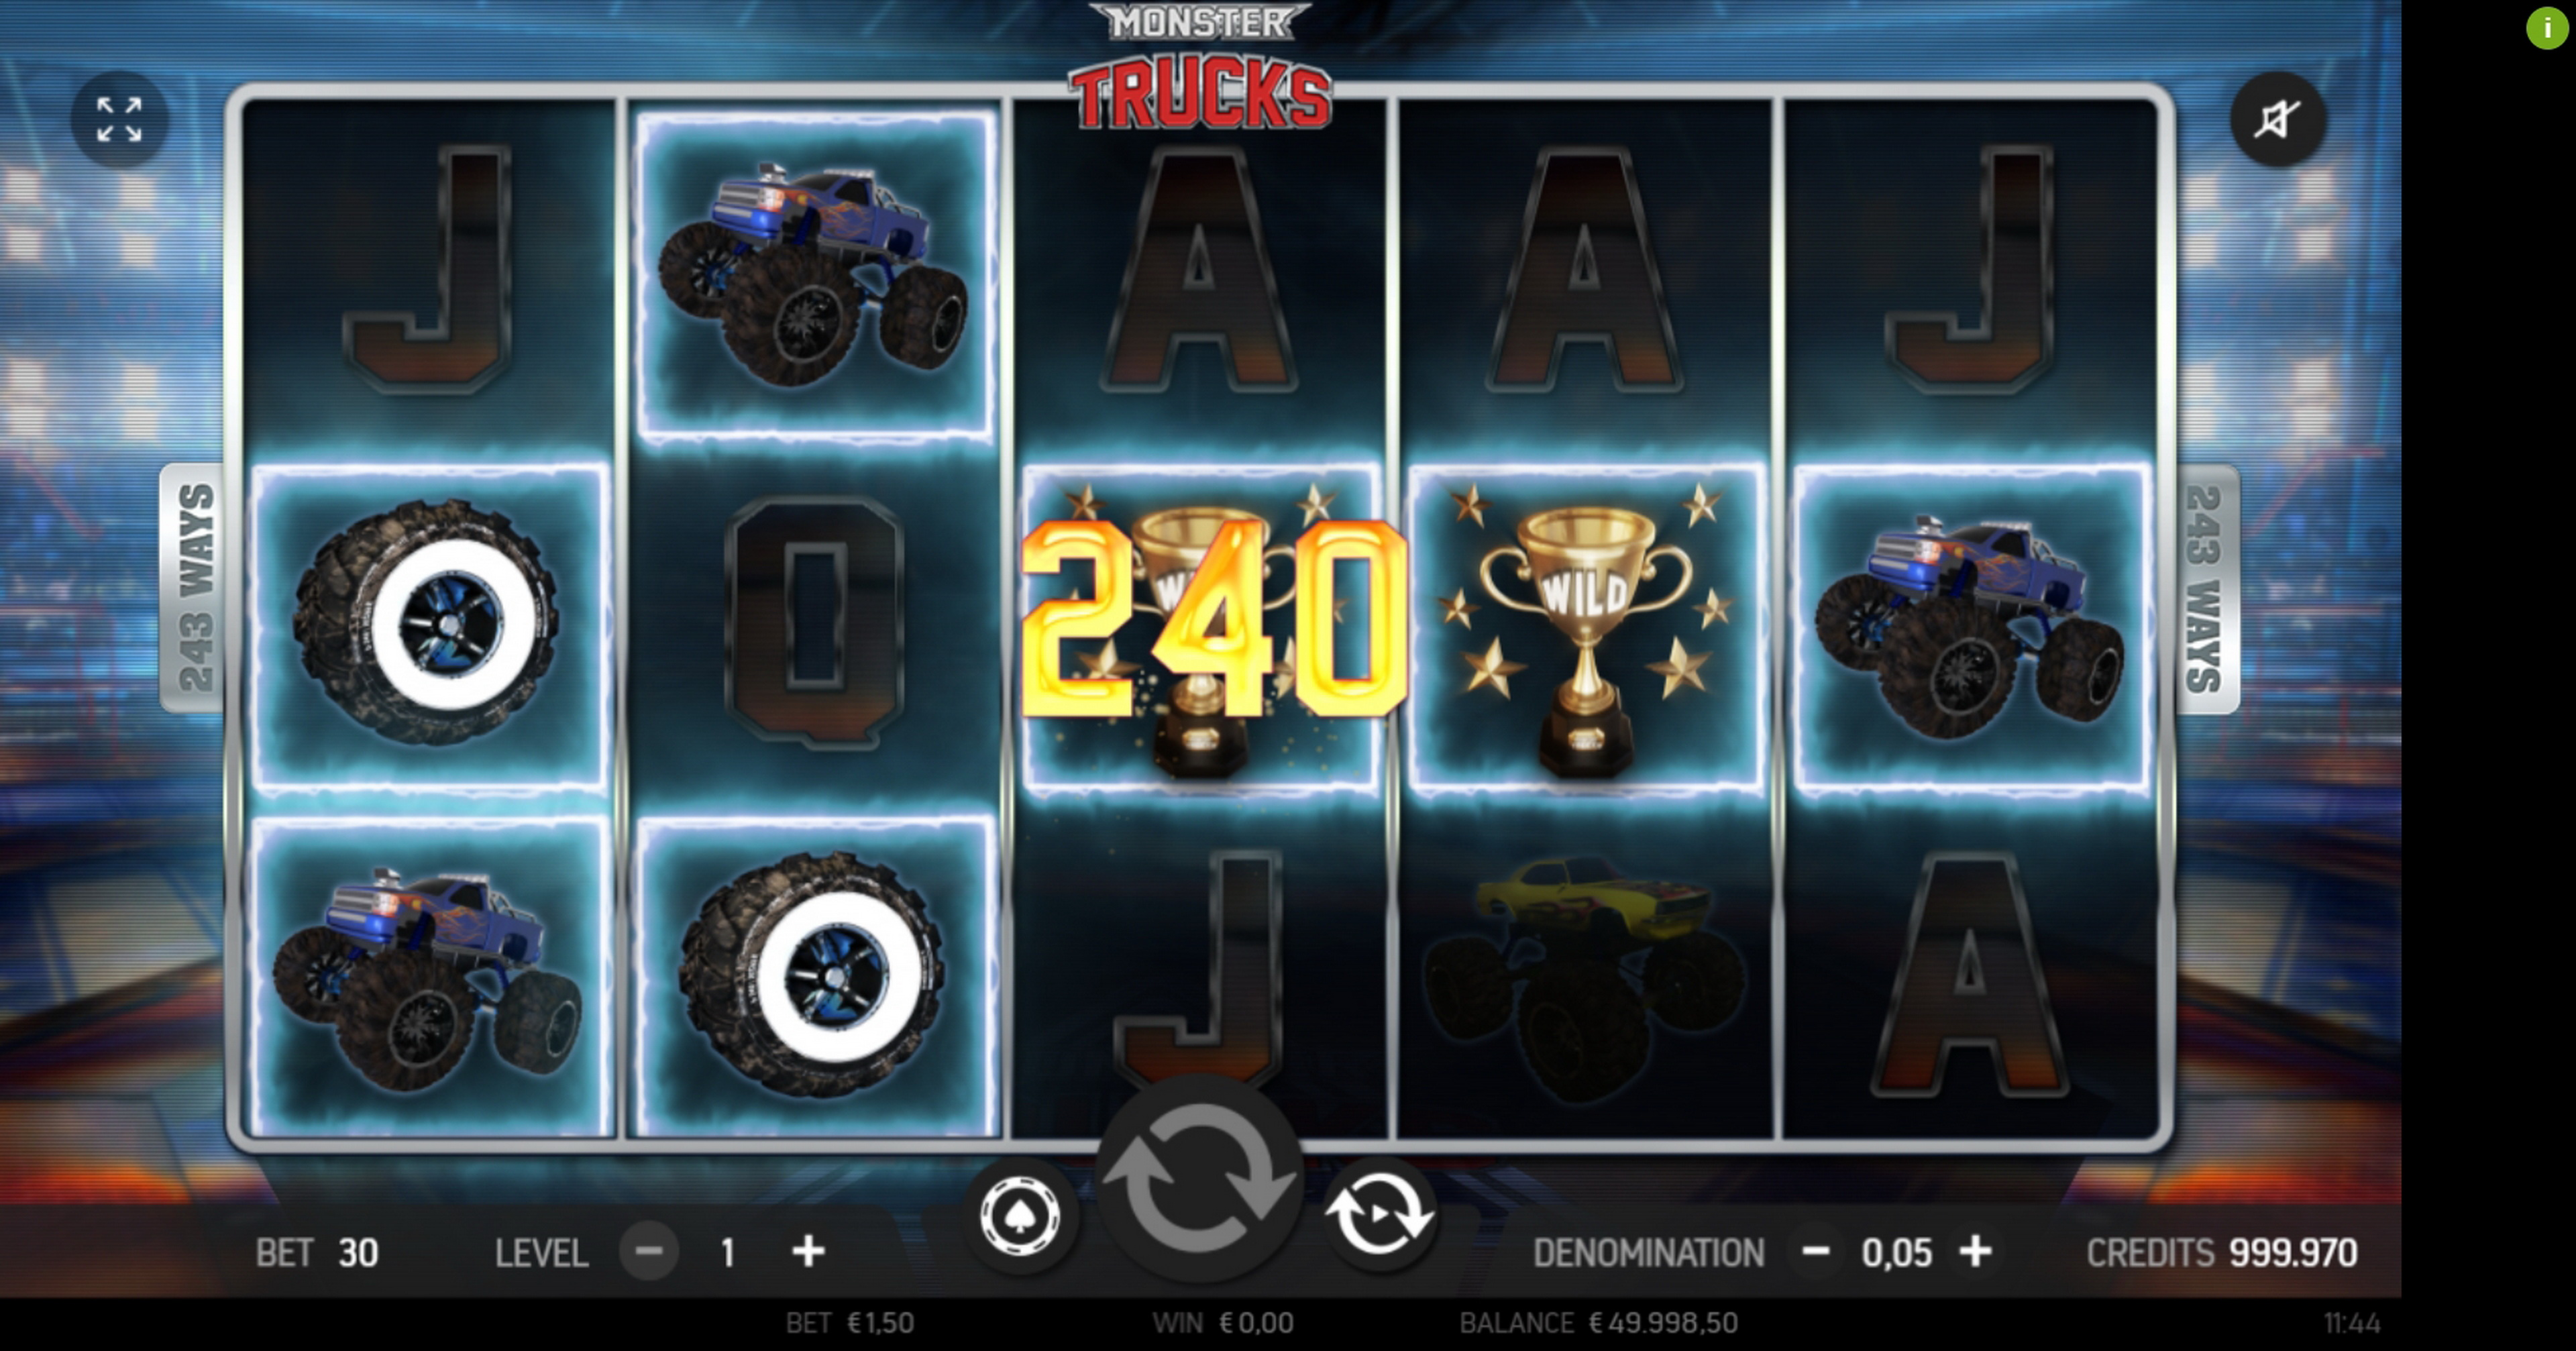 Win Money in Monster Trucks Free Slot Game by FBM